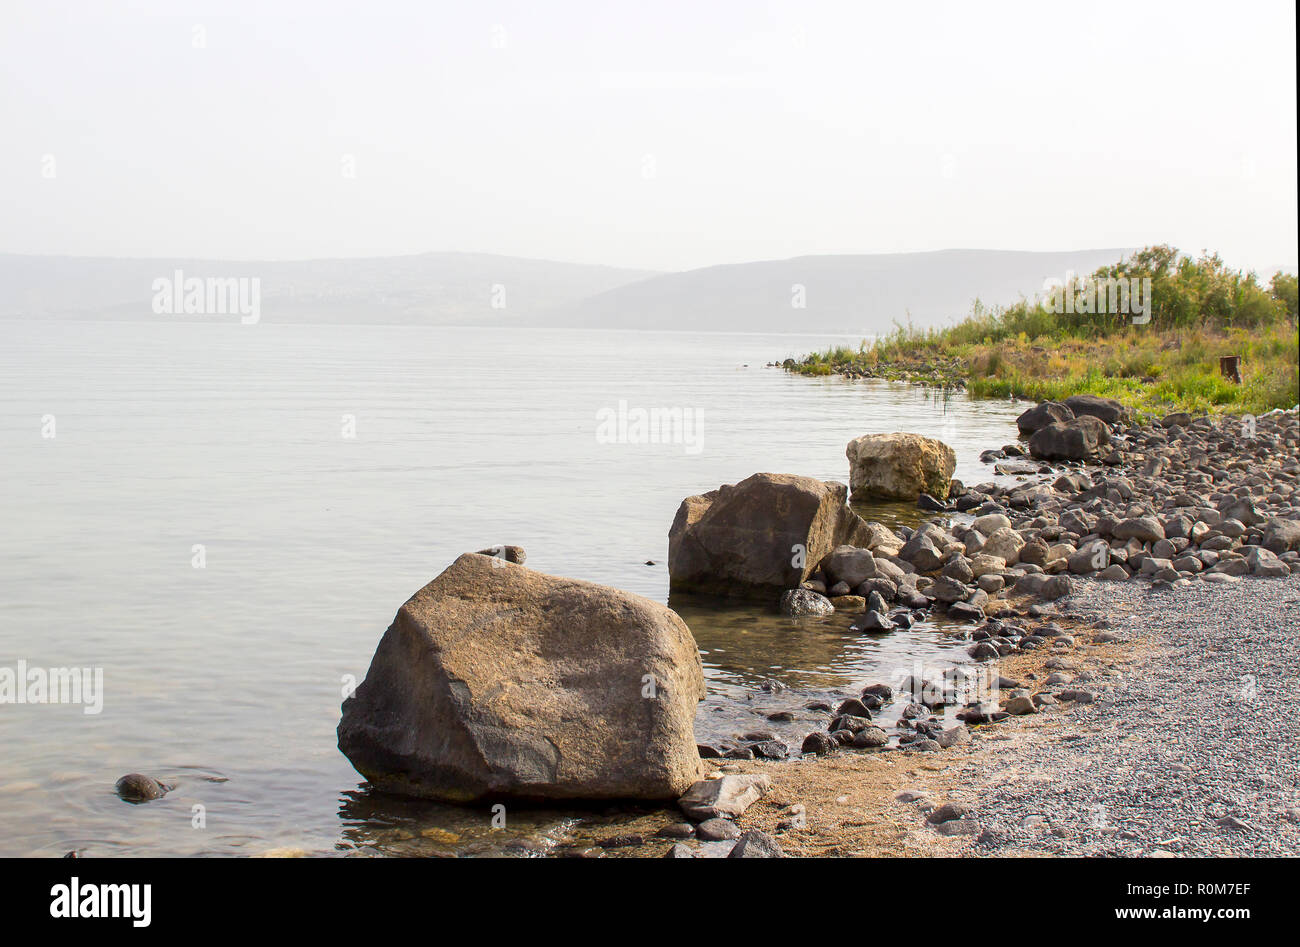 3 mai 2018 de l'estran rocheux et les bas-fonds un calme plat de la mer de Galilée, près de Tibère Israël Israël par une chaude après-midi brumeux Banque D'Images